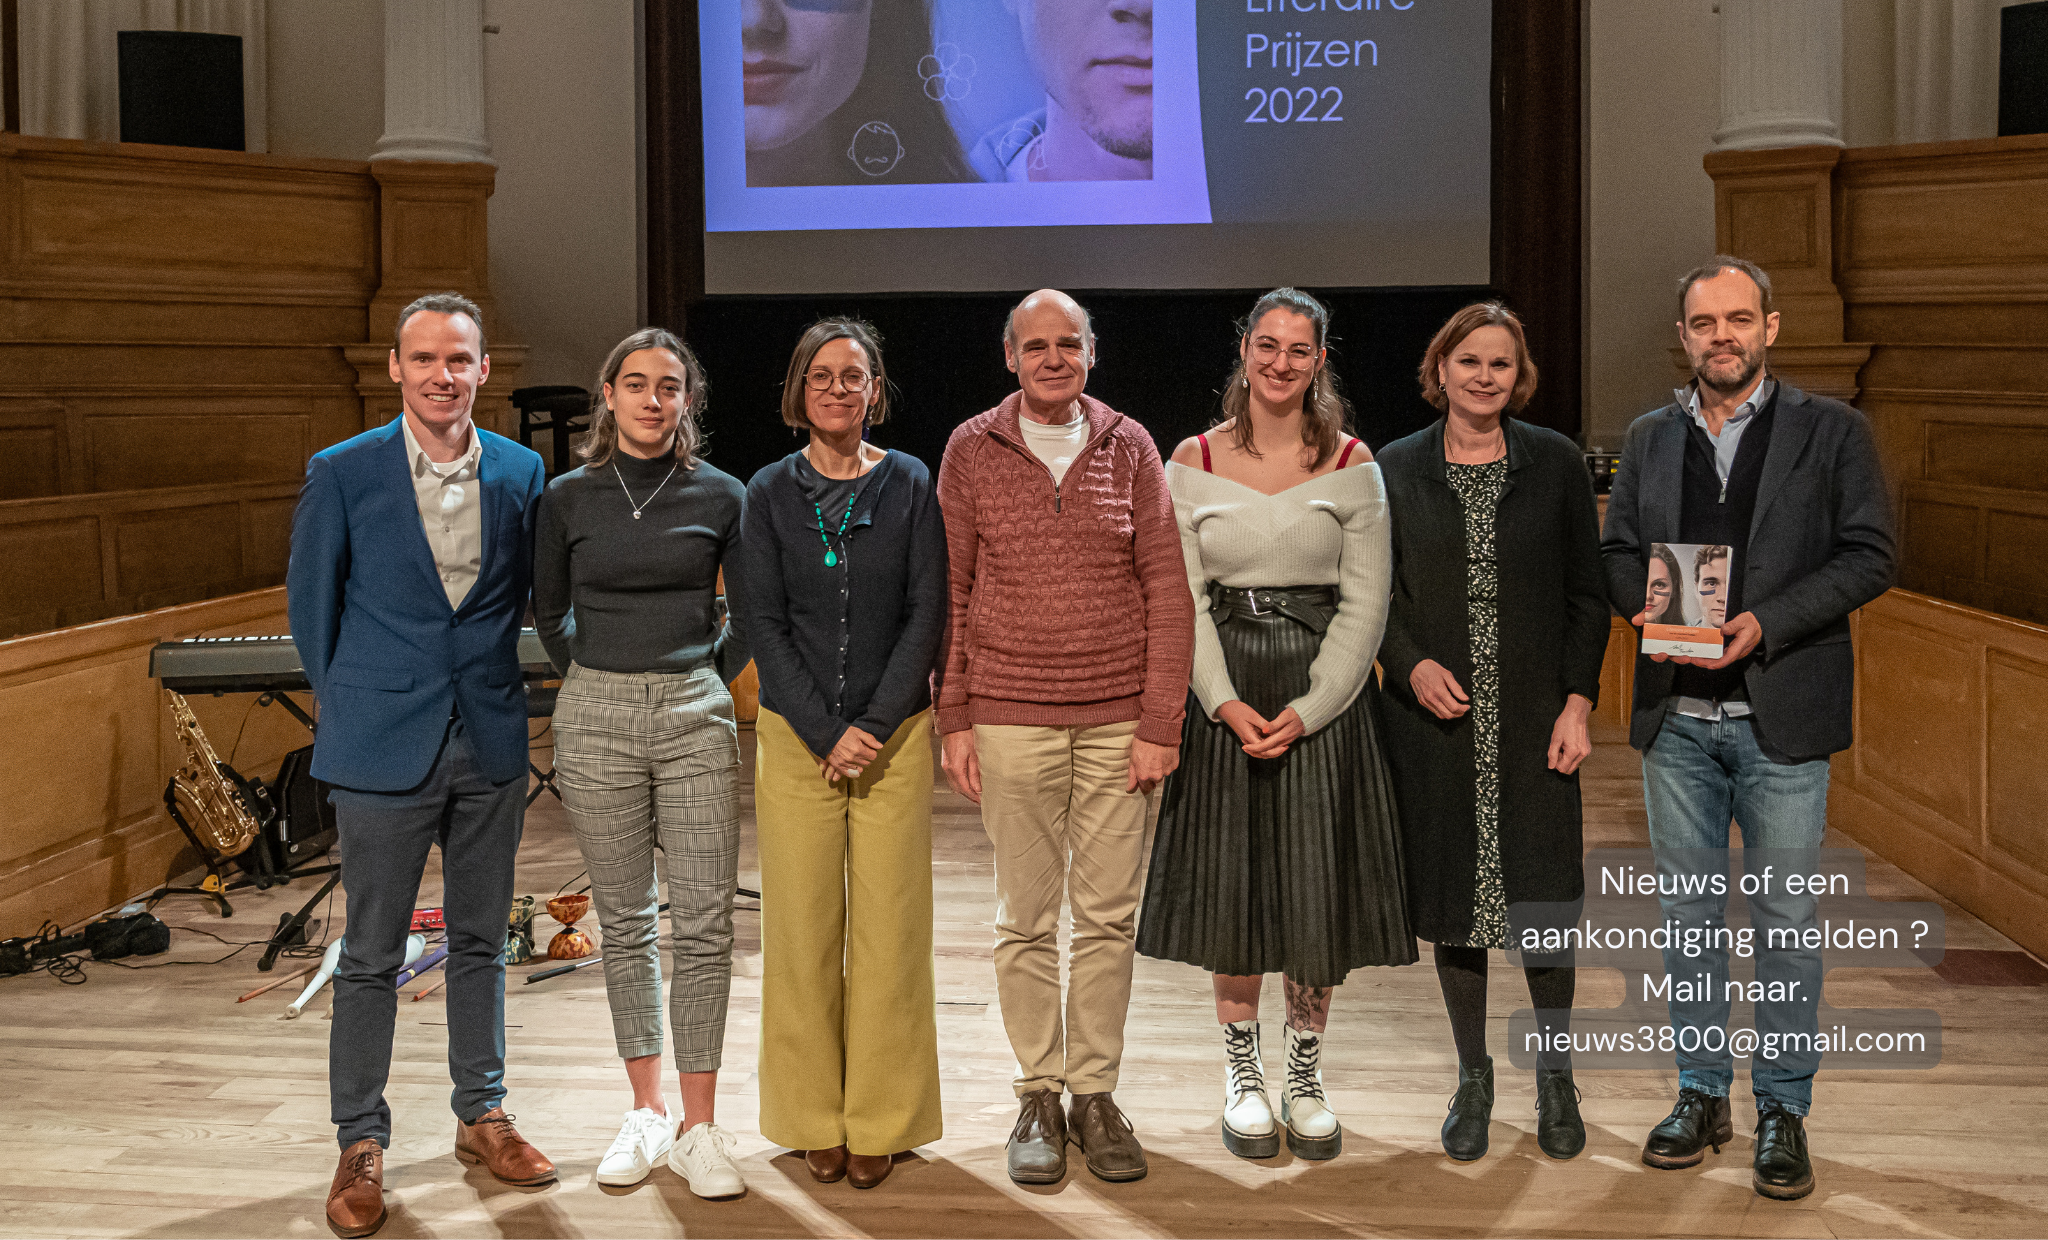 Winnaars Literaire Prijzen van de stad Sint-Truiden 2022 zijn bekend